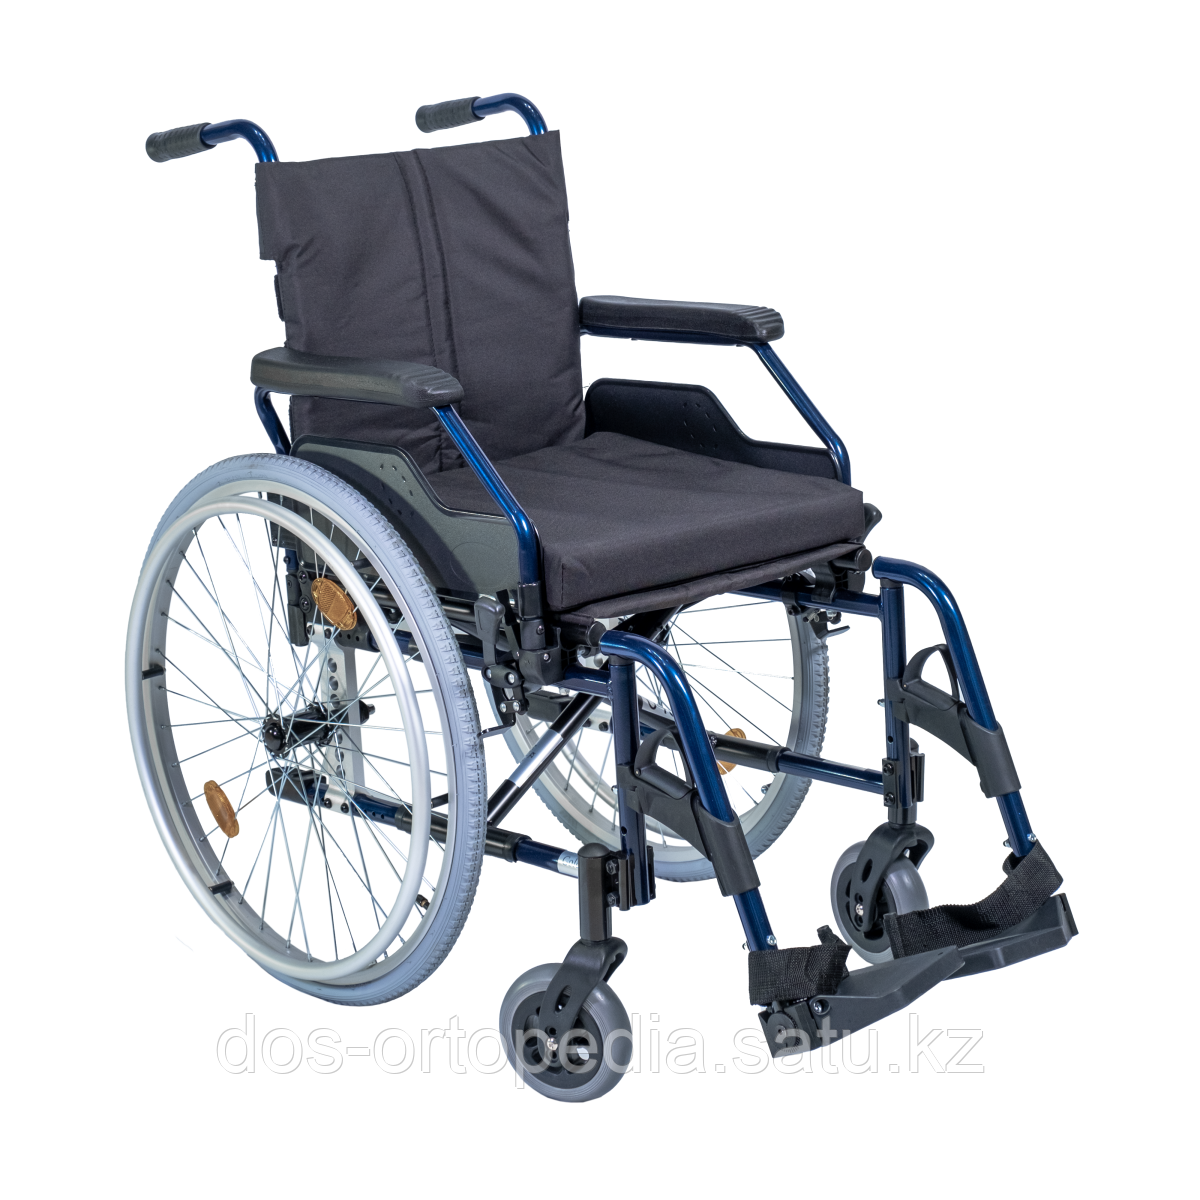 Механическая инвалидная коляска GOLD 450